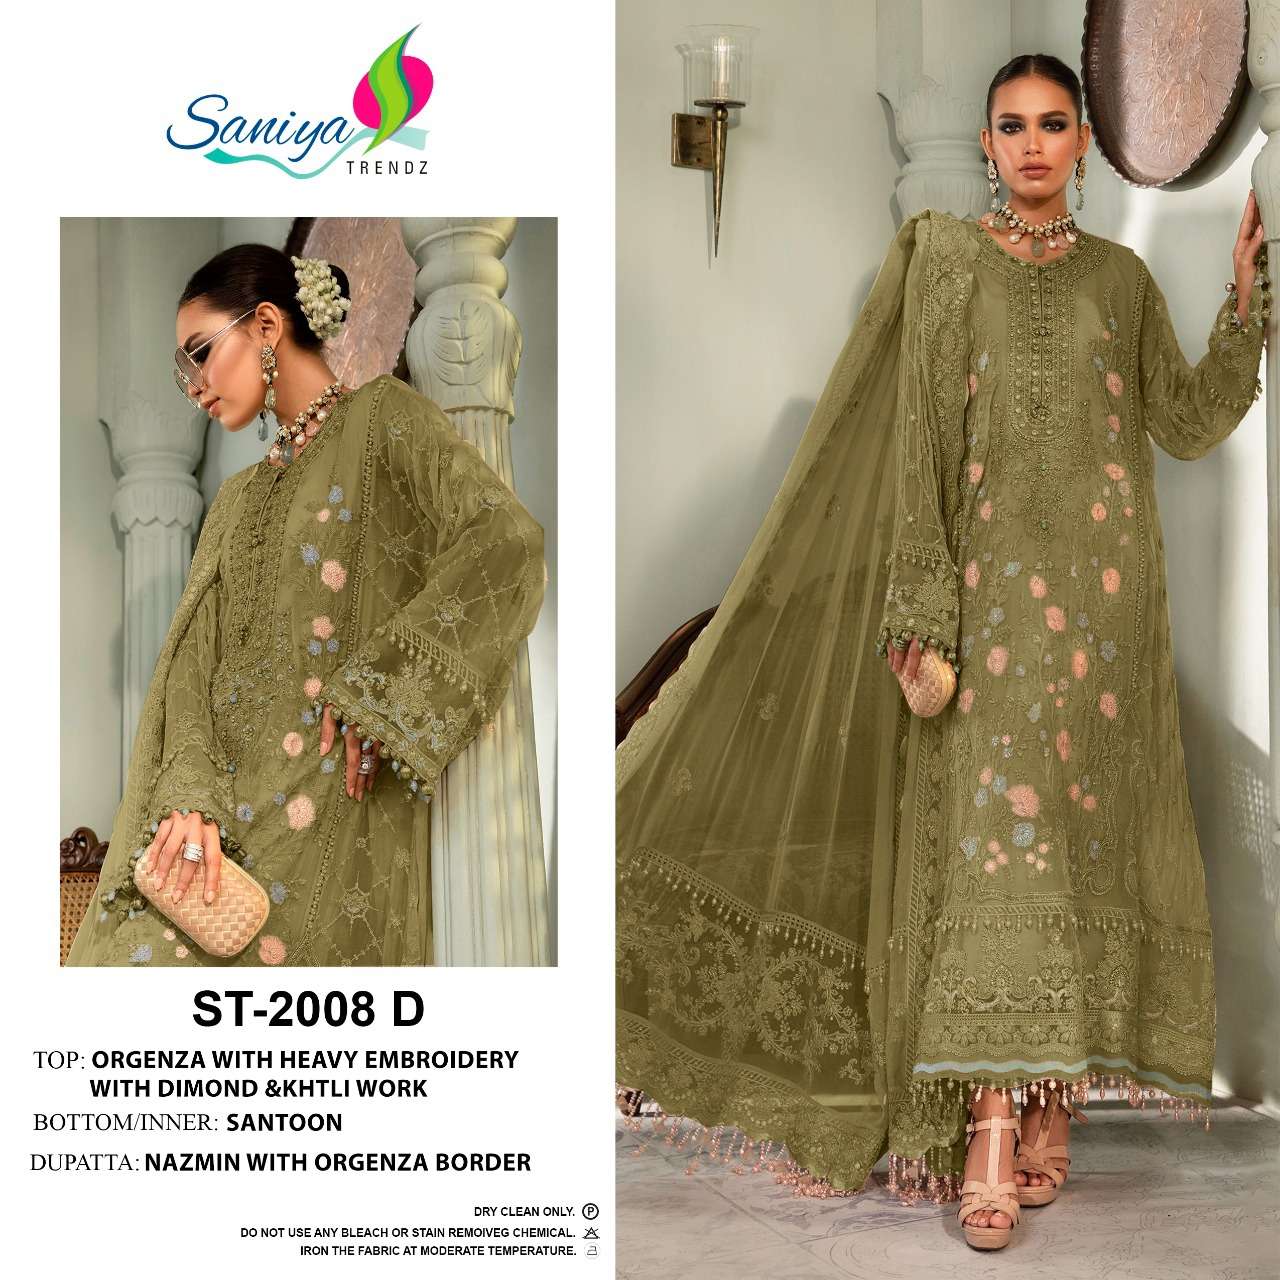 saniya trendz 2008 series organza embroidered with handwork salwar kameez online supplier surat 